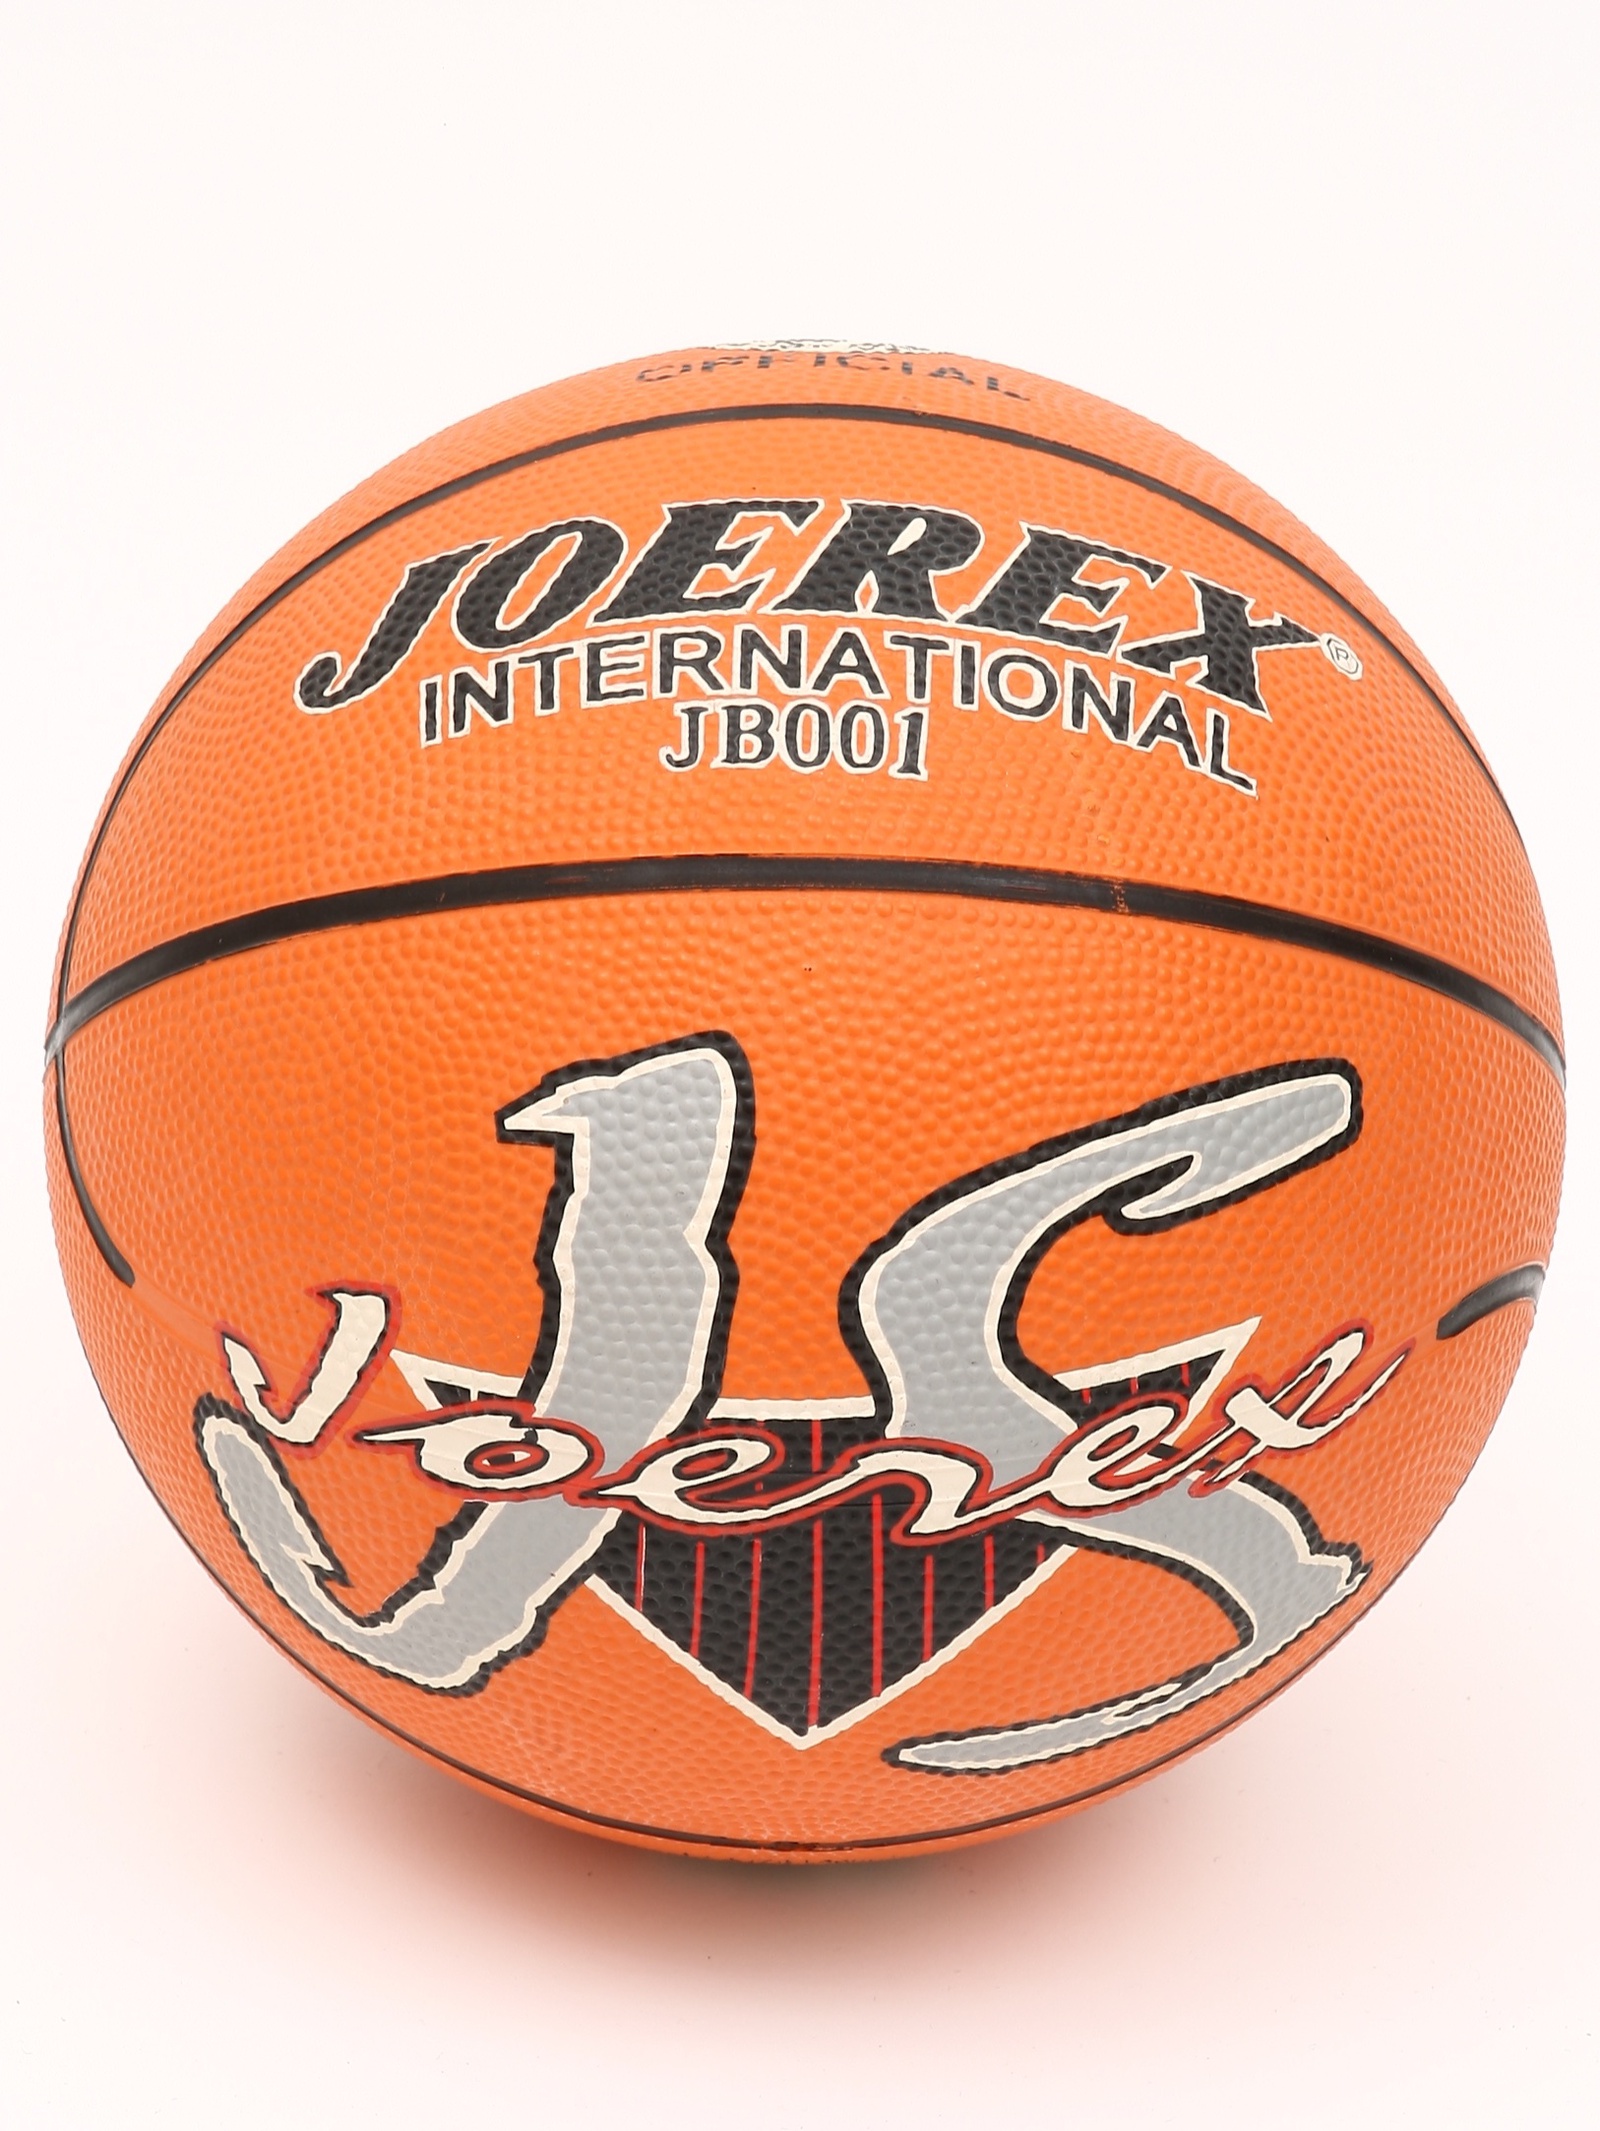 Мяч баскетбольный JB001 №7 Joerex